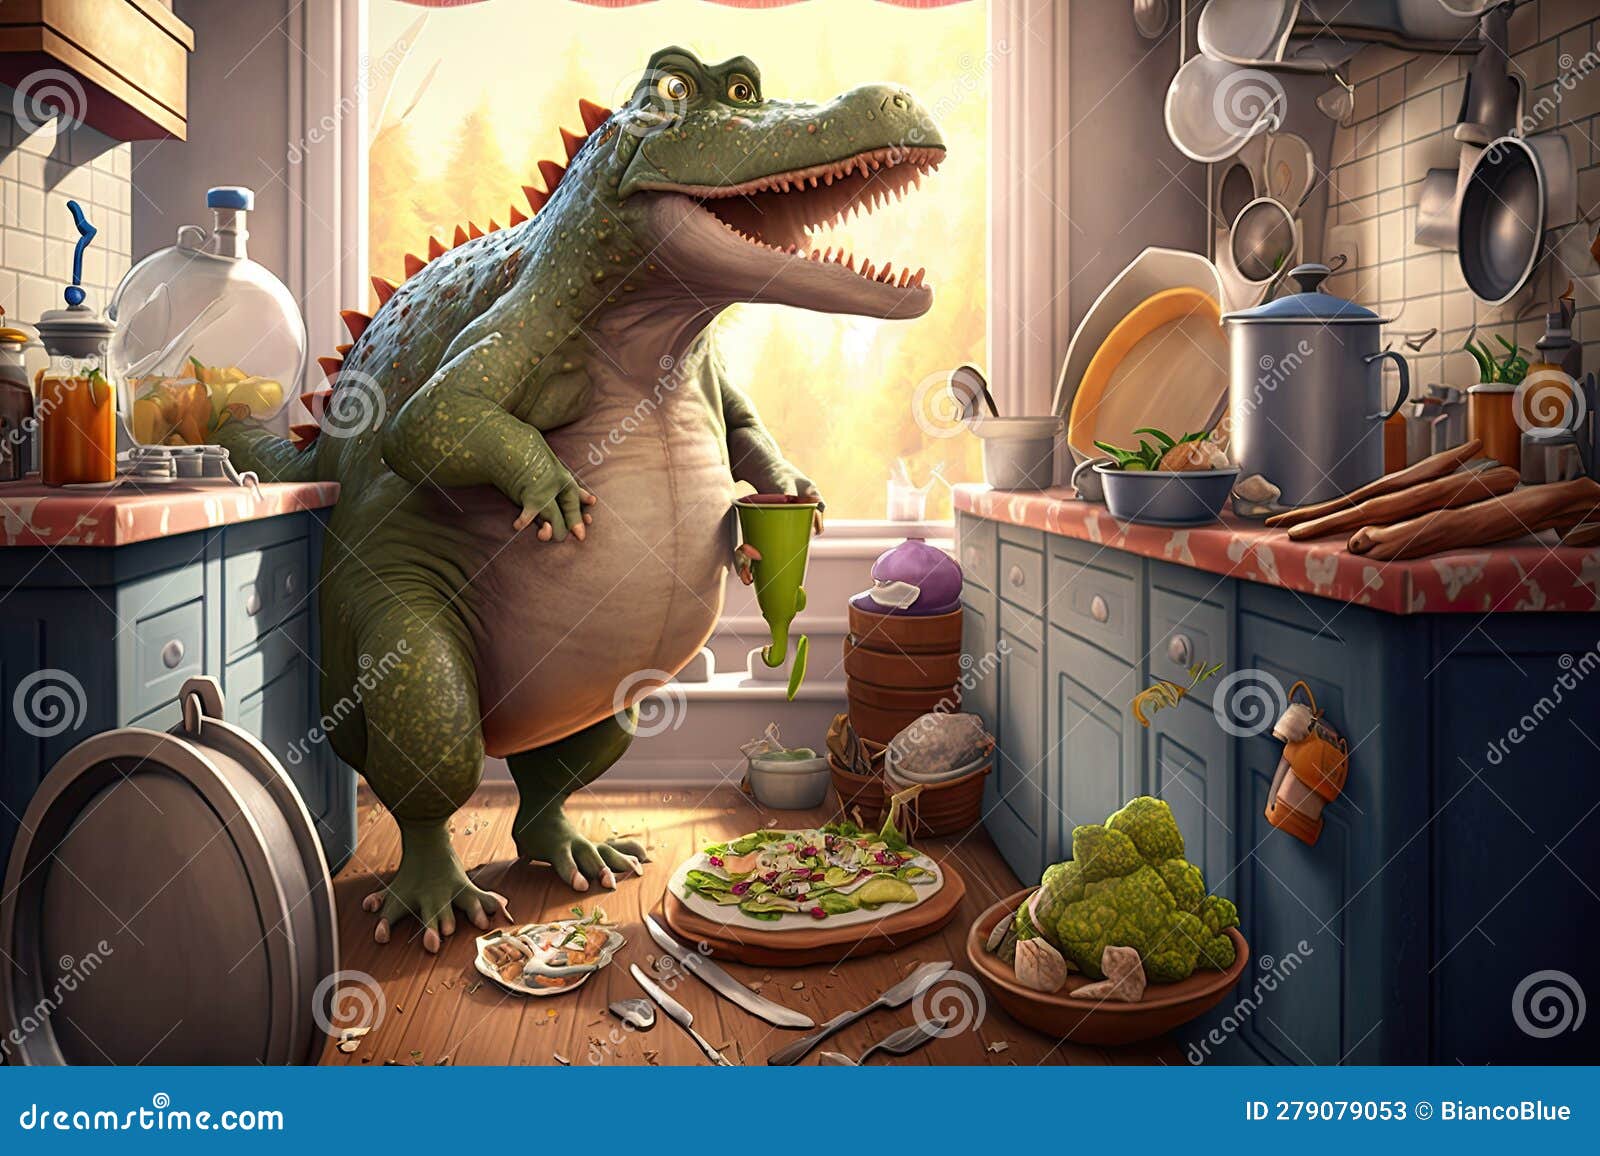 Funny Tyrannosaurus Rex Dinosaur Cartoon Character Stock Illustration ...